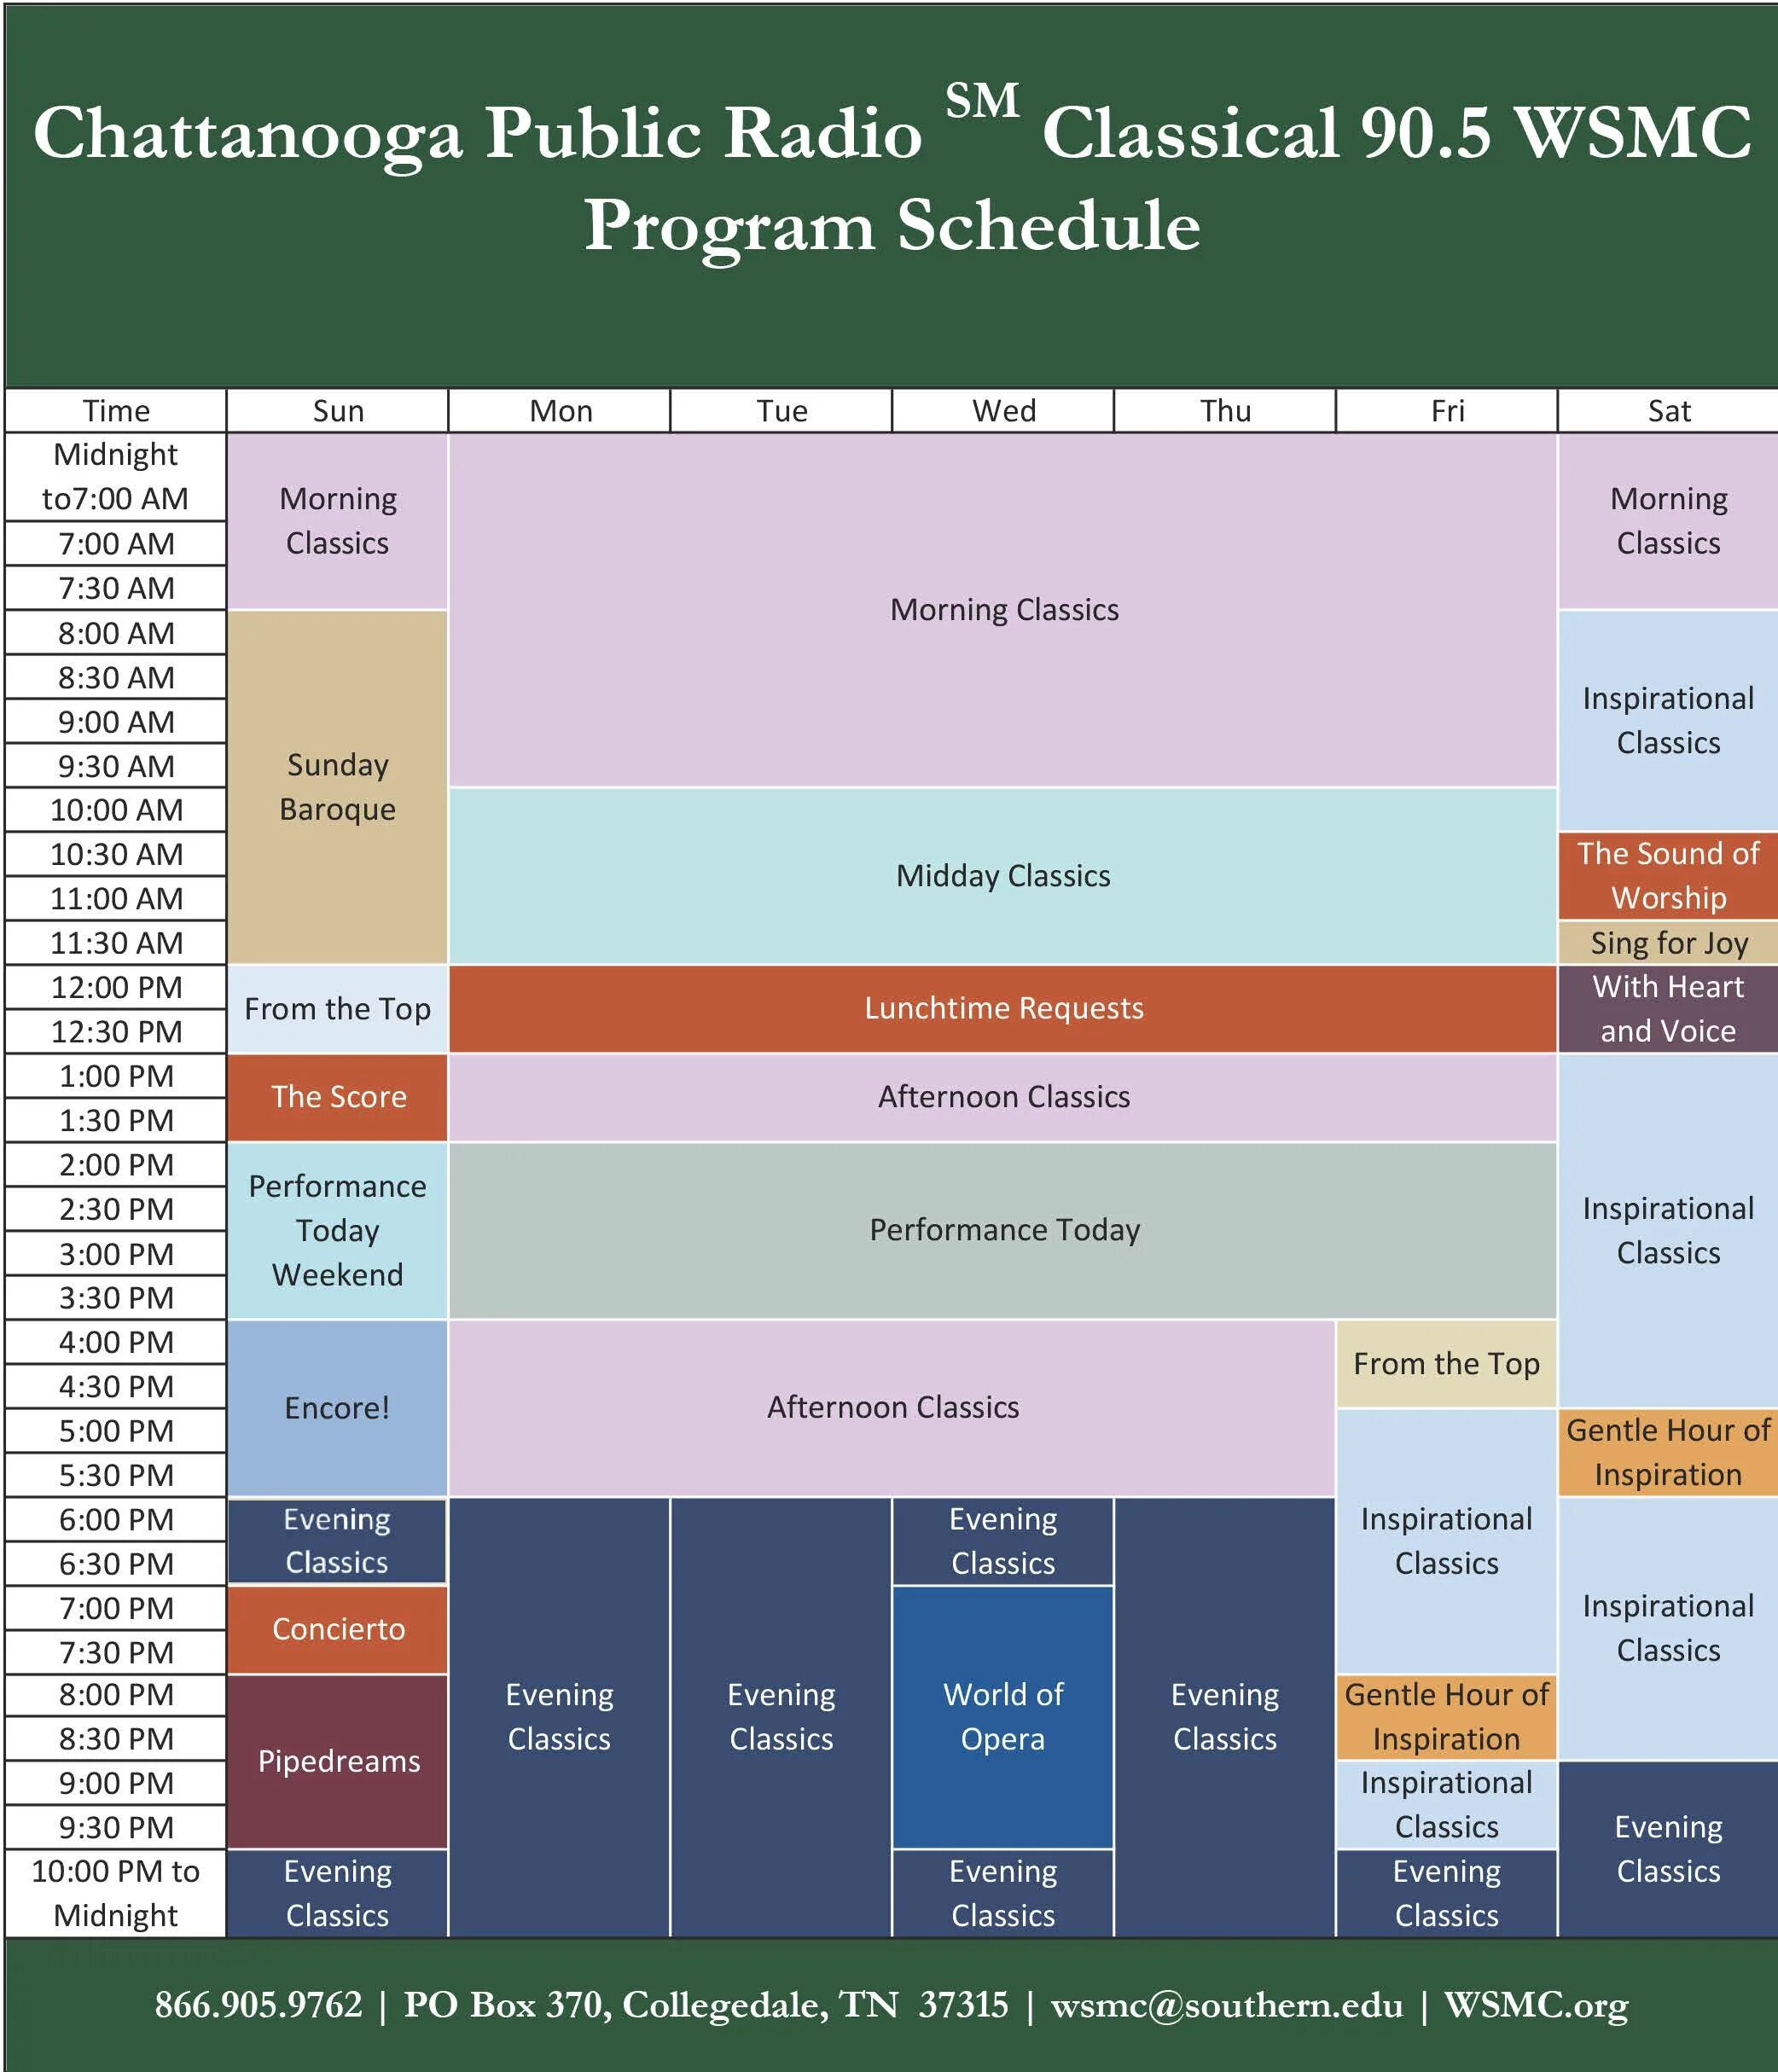 Eduforum spb ru program schedule. Академик расписание. Electronic Schedule программа. Руководство по монтажу Schedule Uni. Class Schedule.